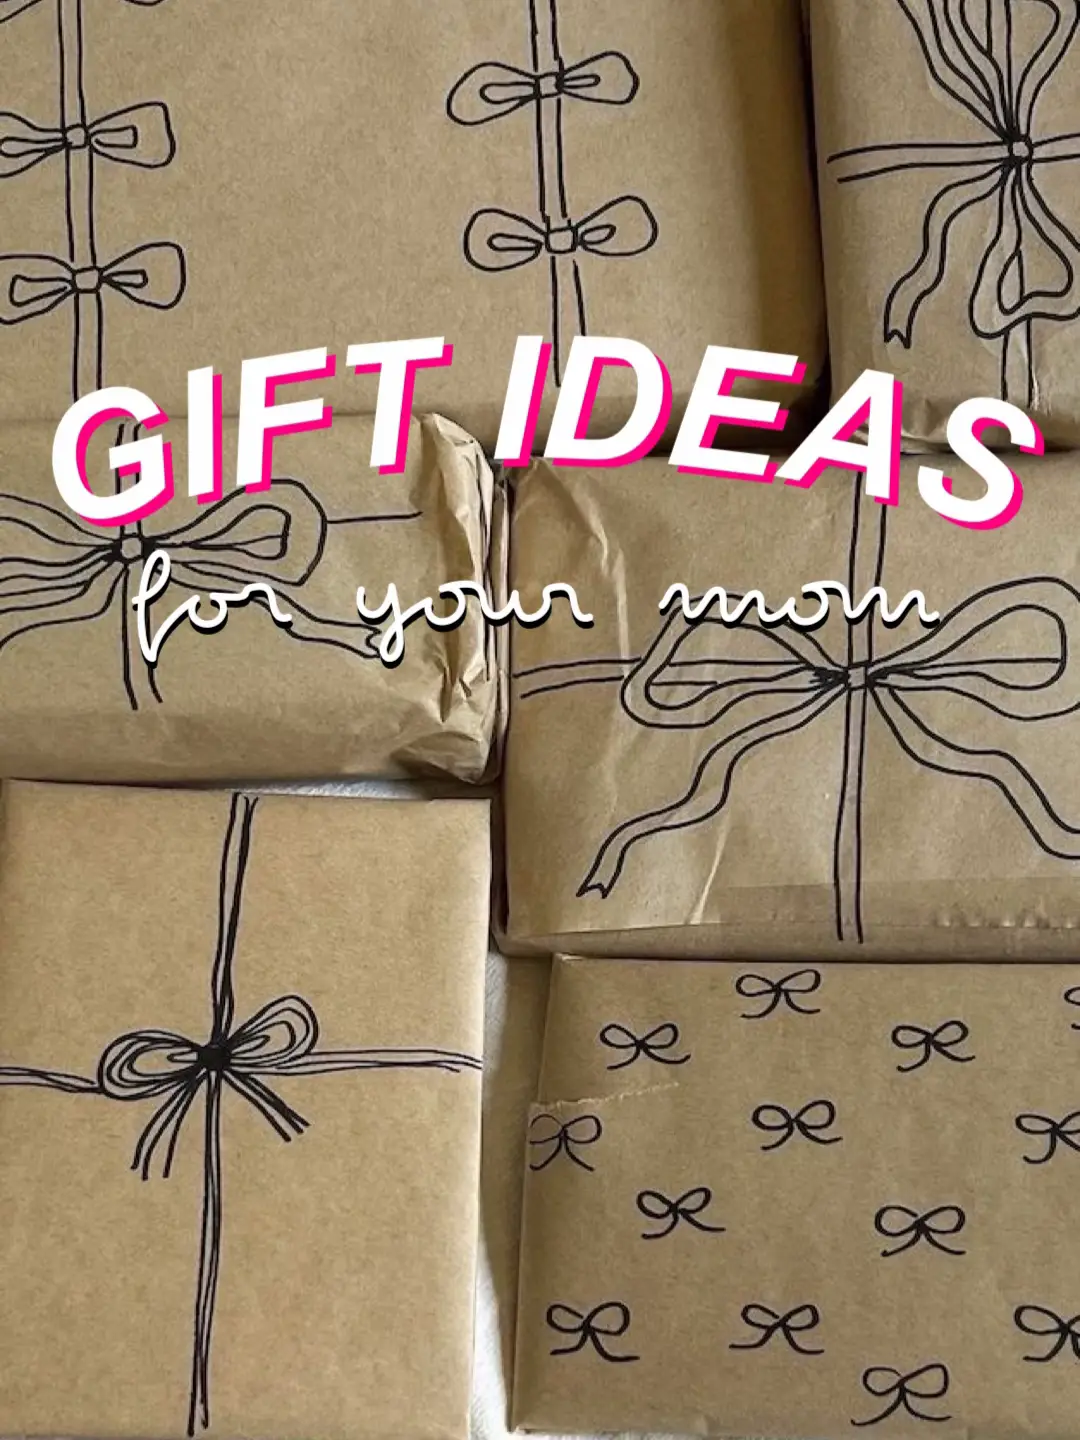 Christmas Gifts for Mom Amazon - Lemon8 Search